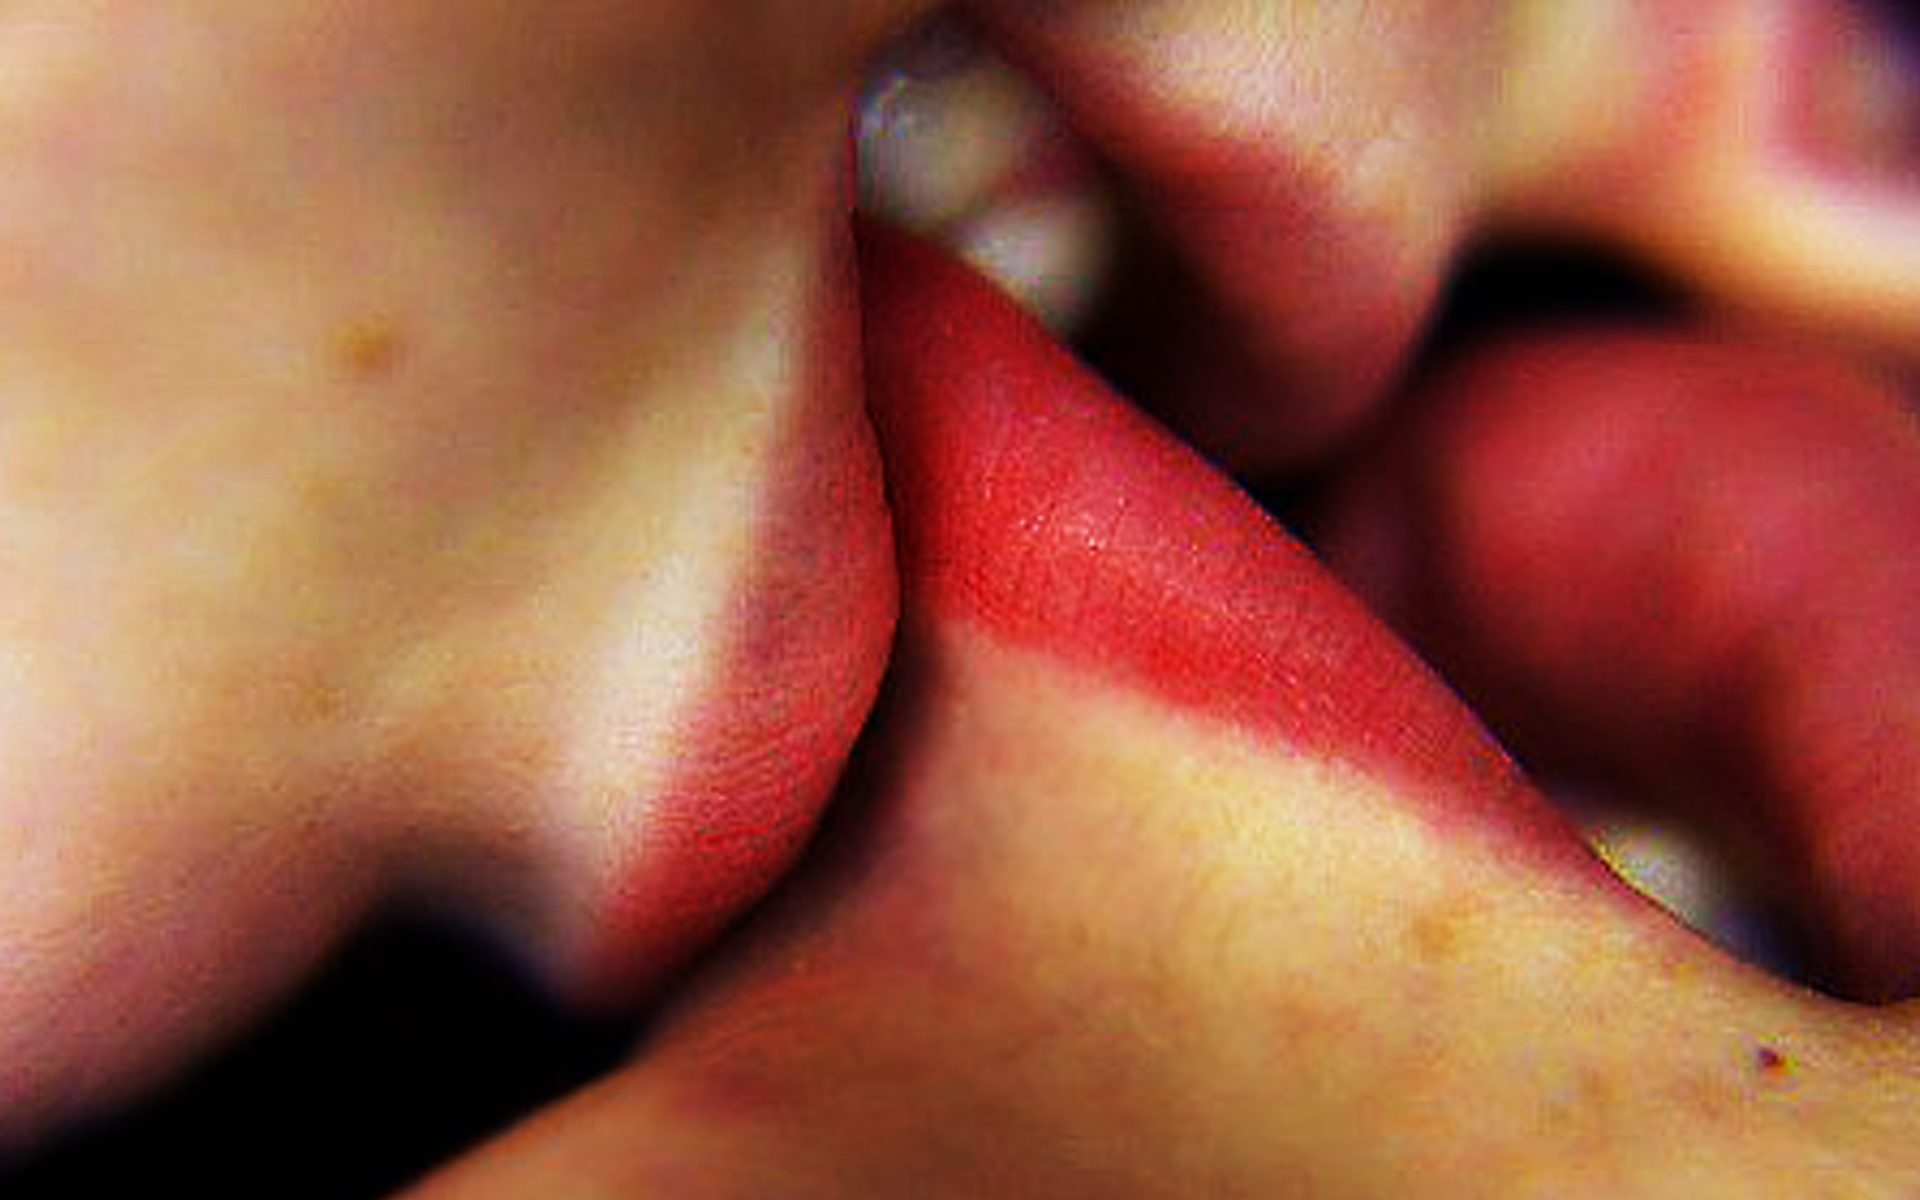 Համբույրի բուժիչ հատկությունները* բժշկական տեսակետից 